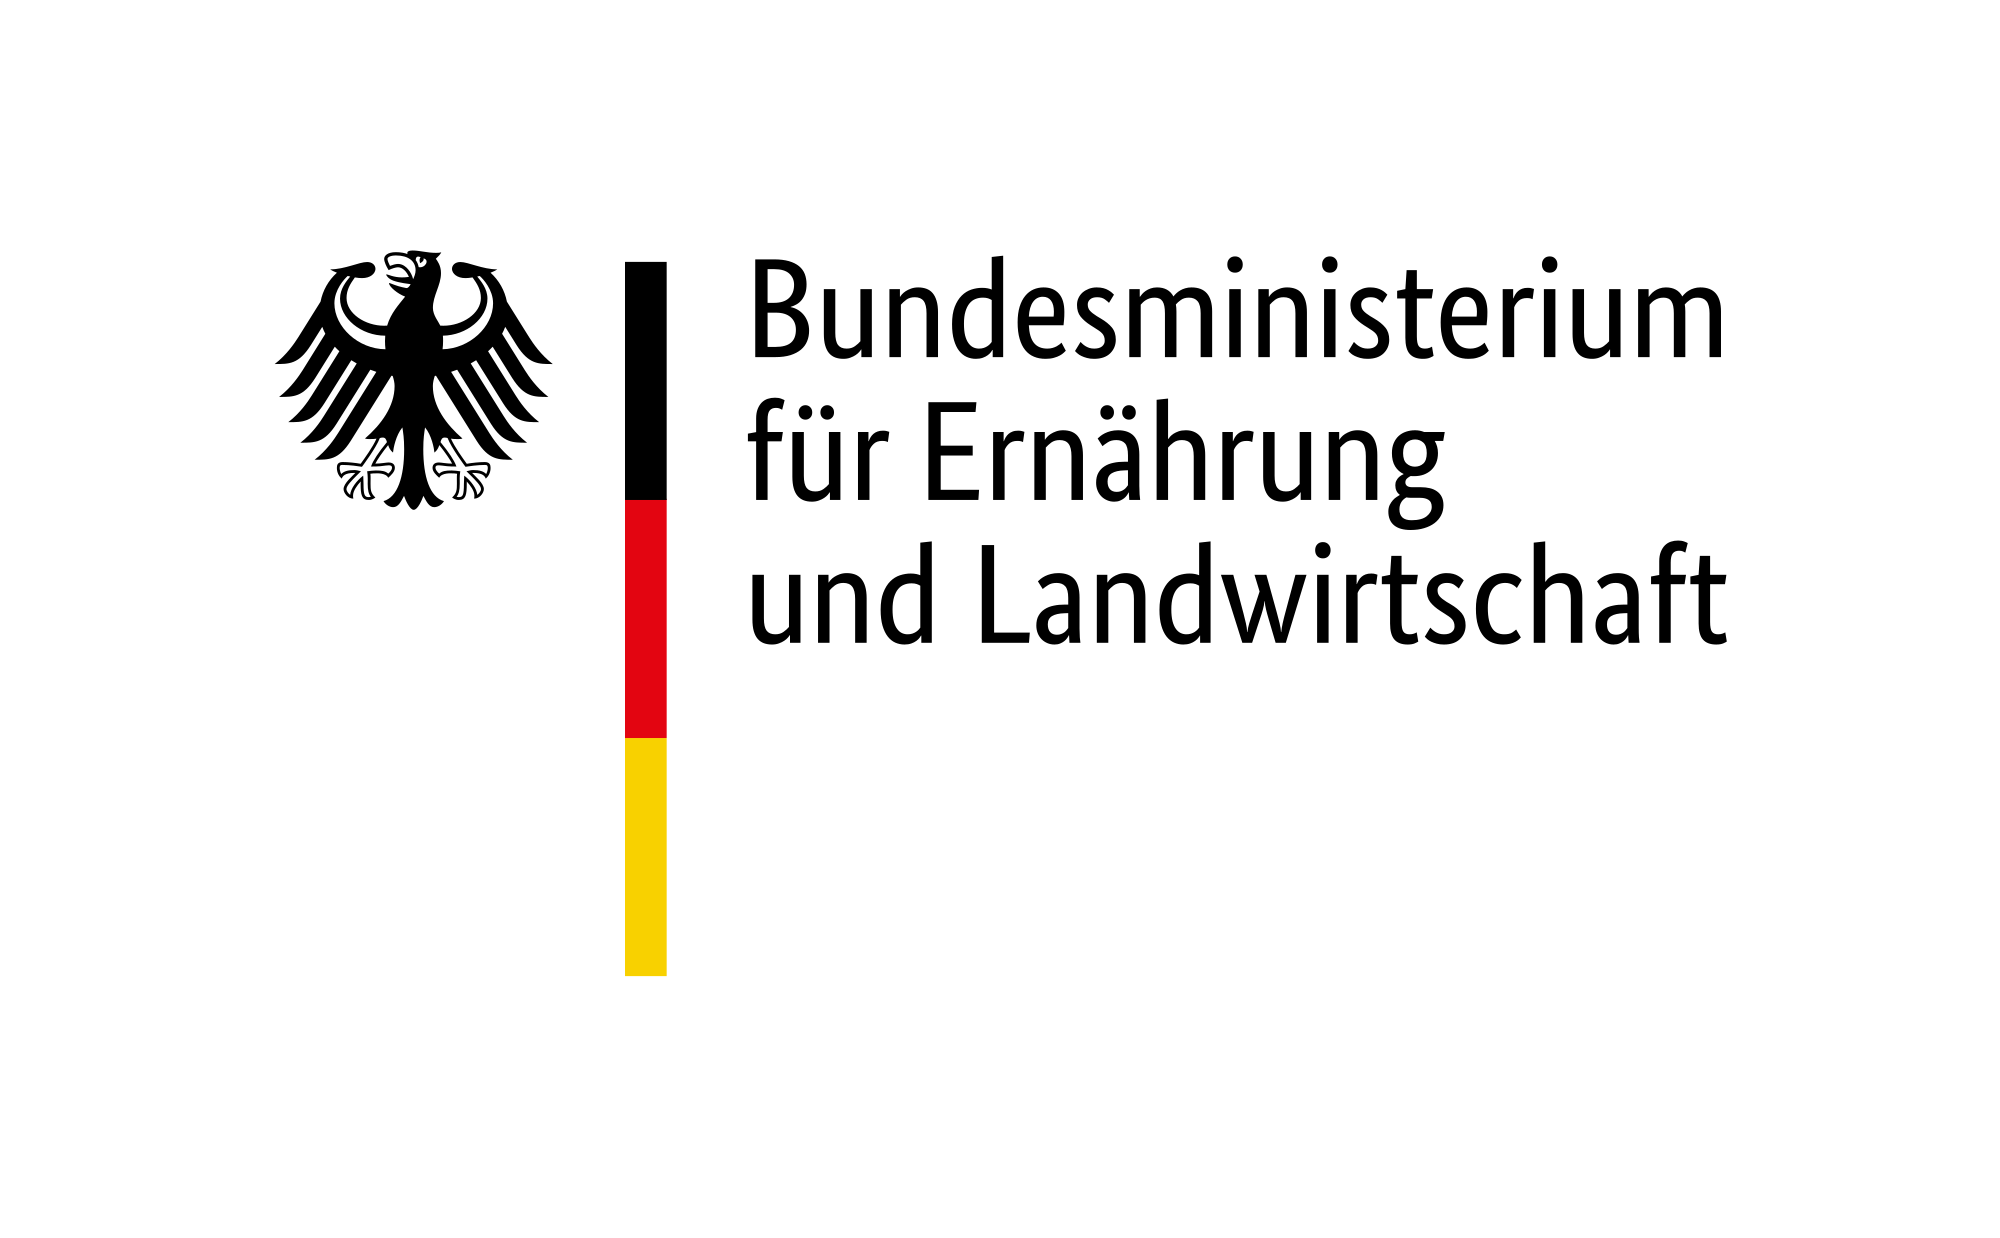 logo Bundesministerium